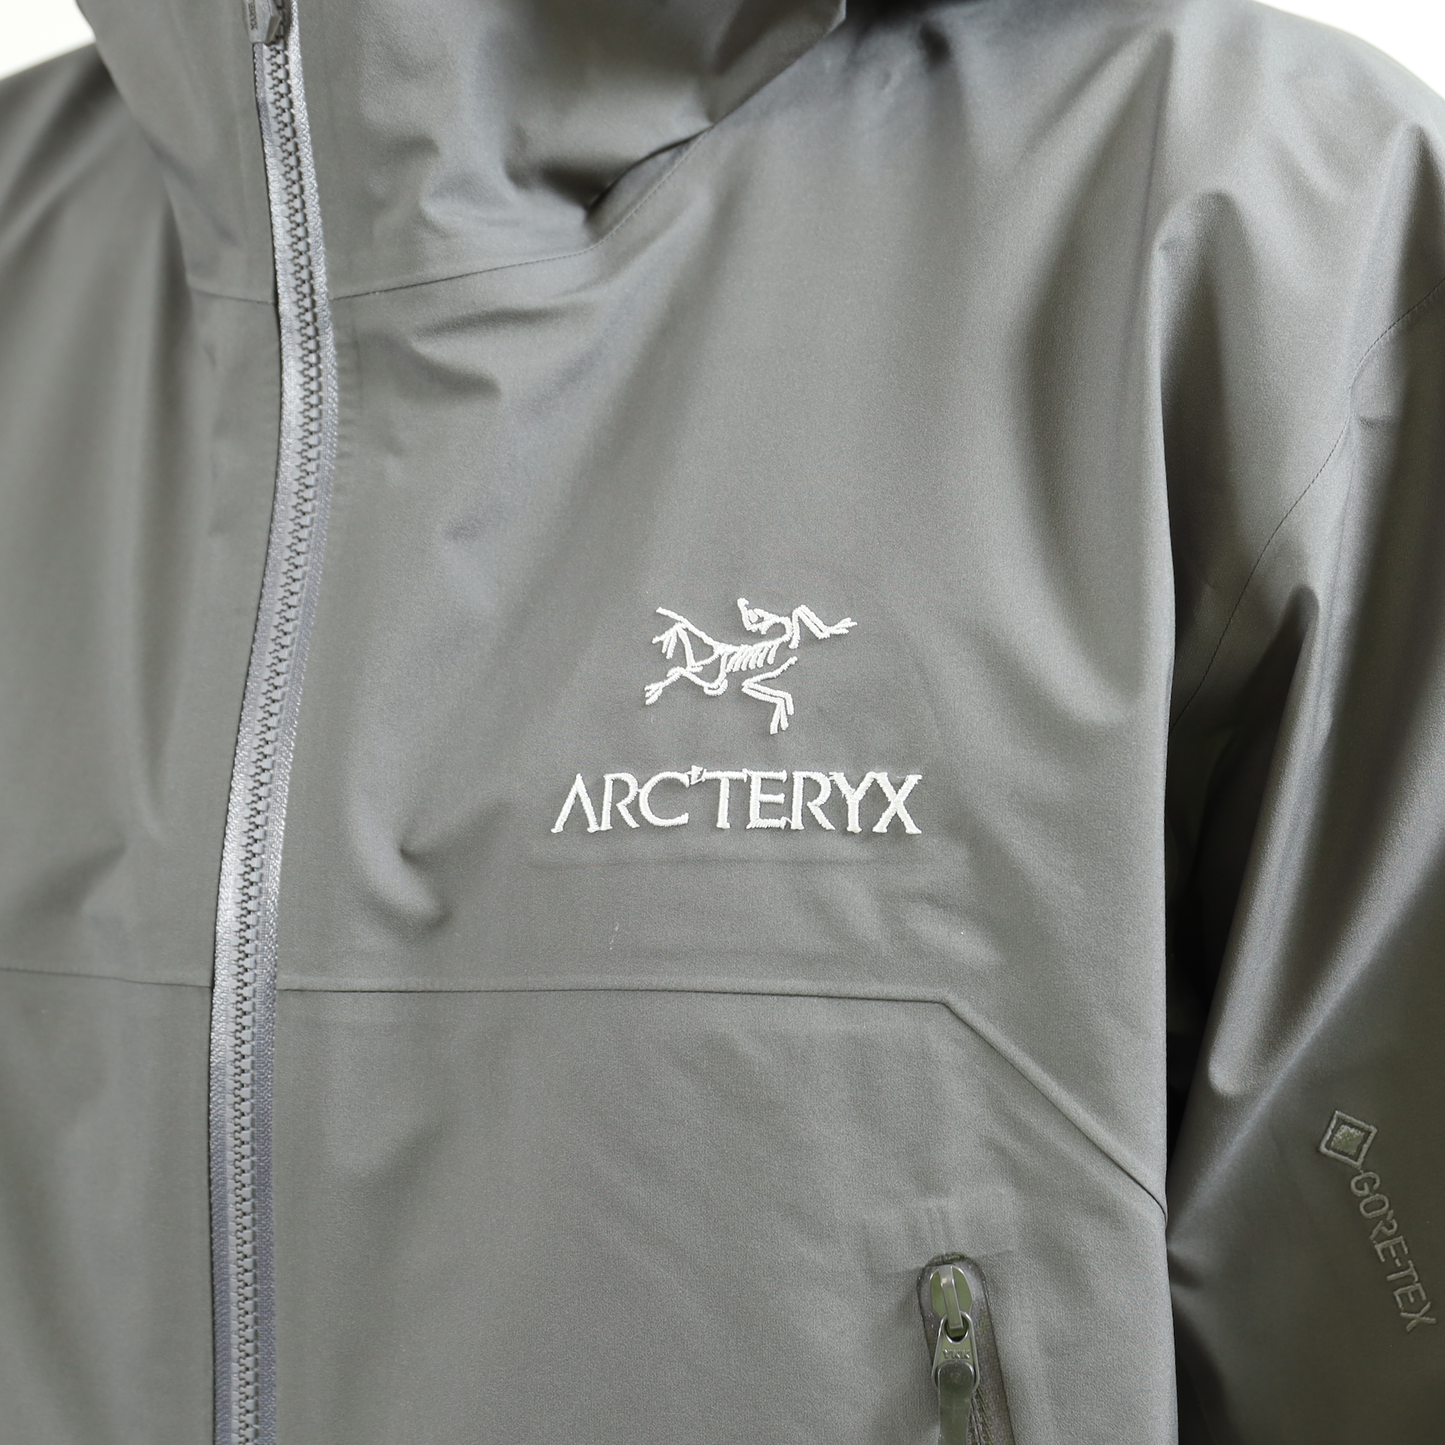 【Arc'teryx】Beta Jacket Men's